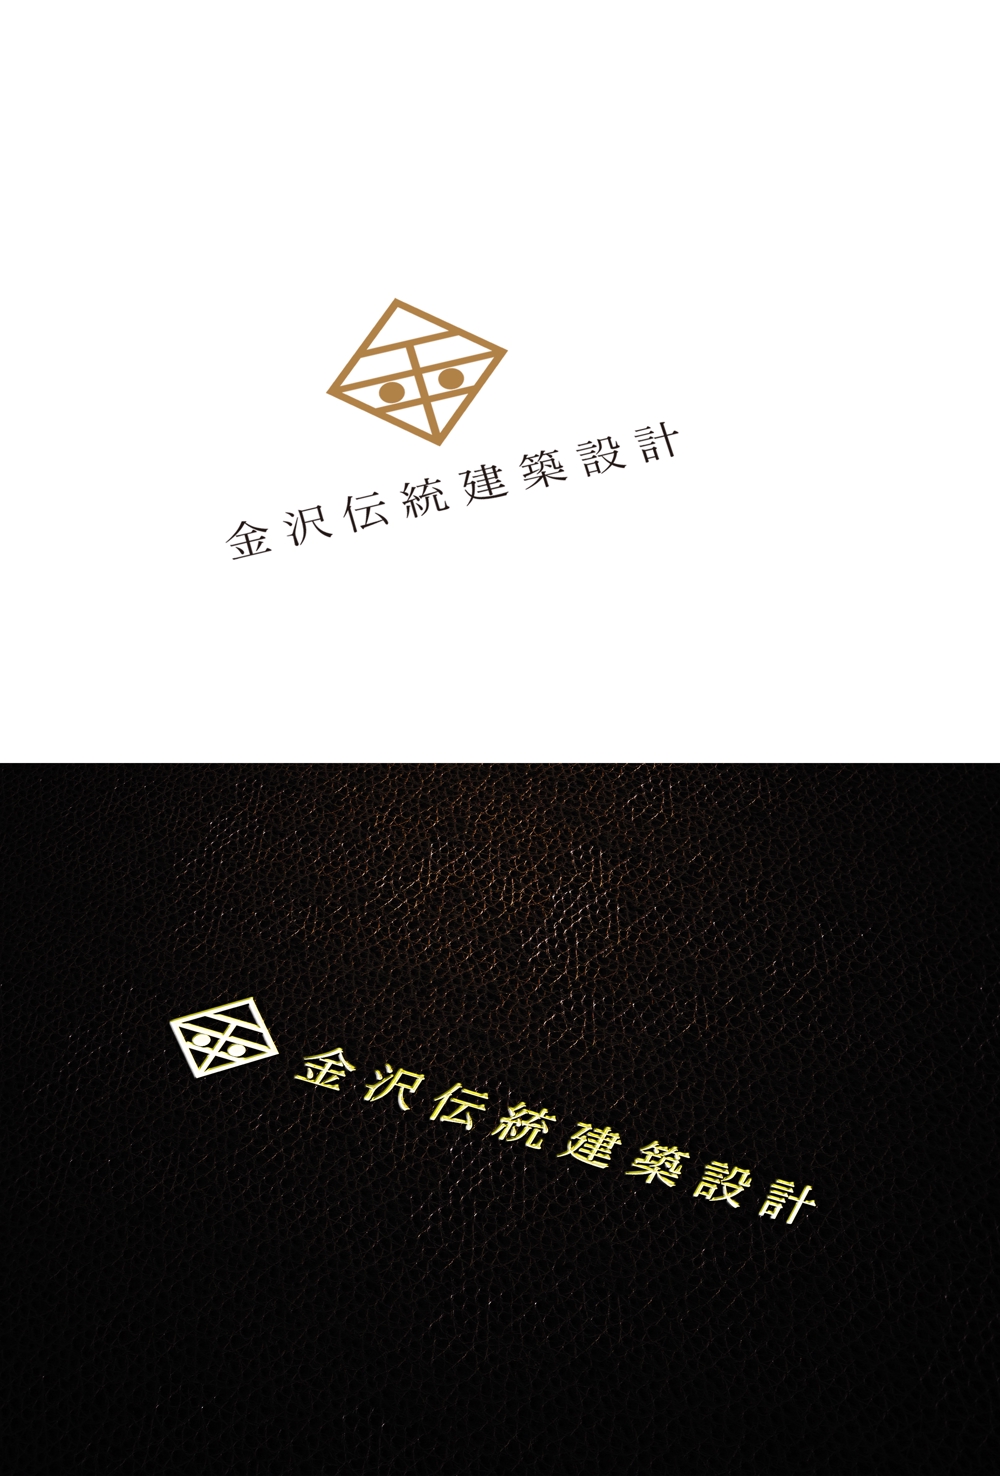 文化財建造物の修復に関する調査設計監理を行う建築設計事務所「（株）金沢伝統建築設計」のロゴ